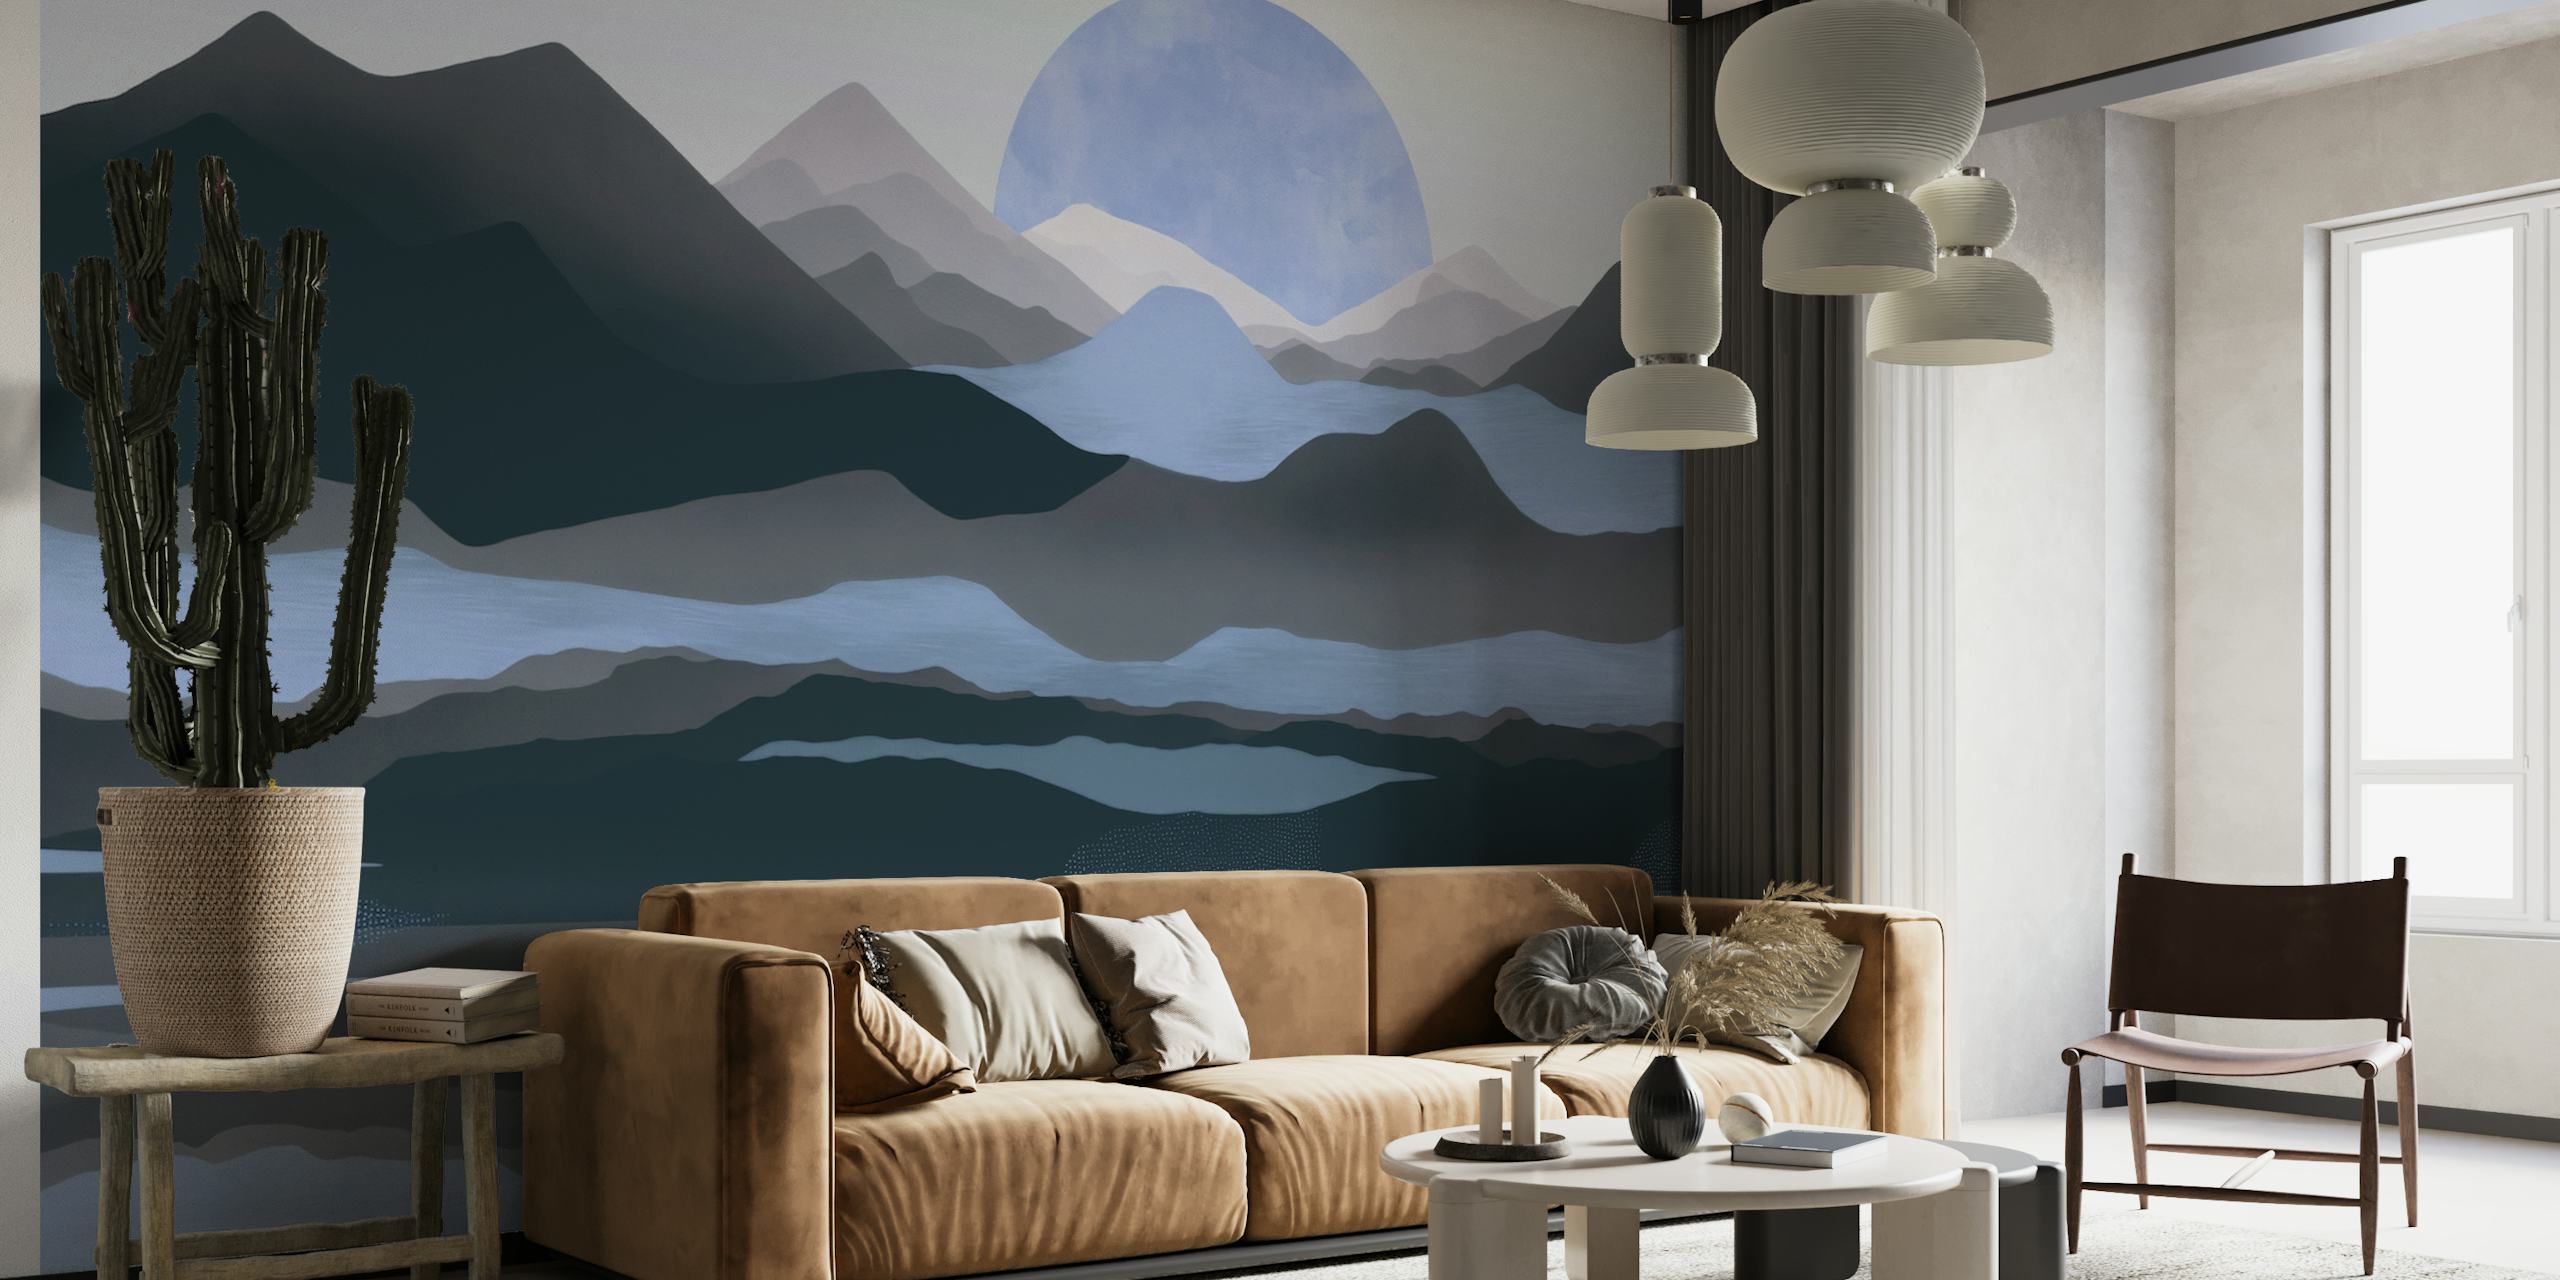 Mural de parede Calm Moon Rise over Mountain Range para decoração de interiores tranquila